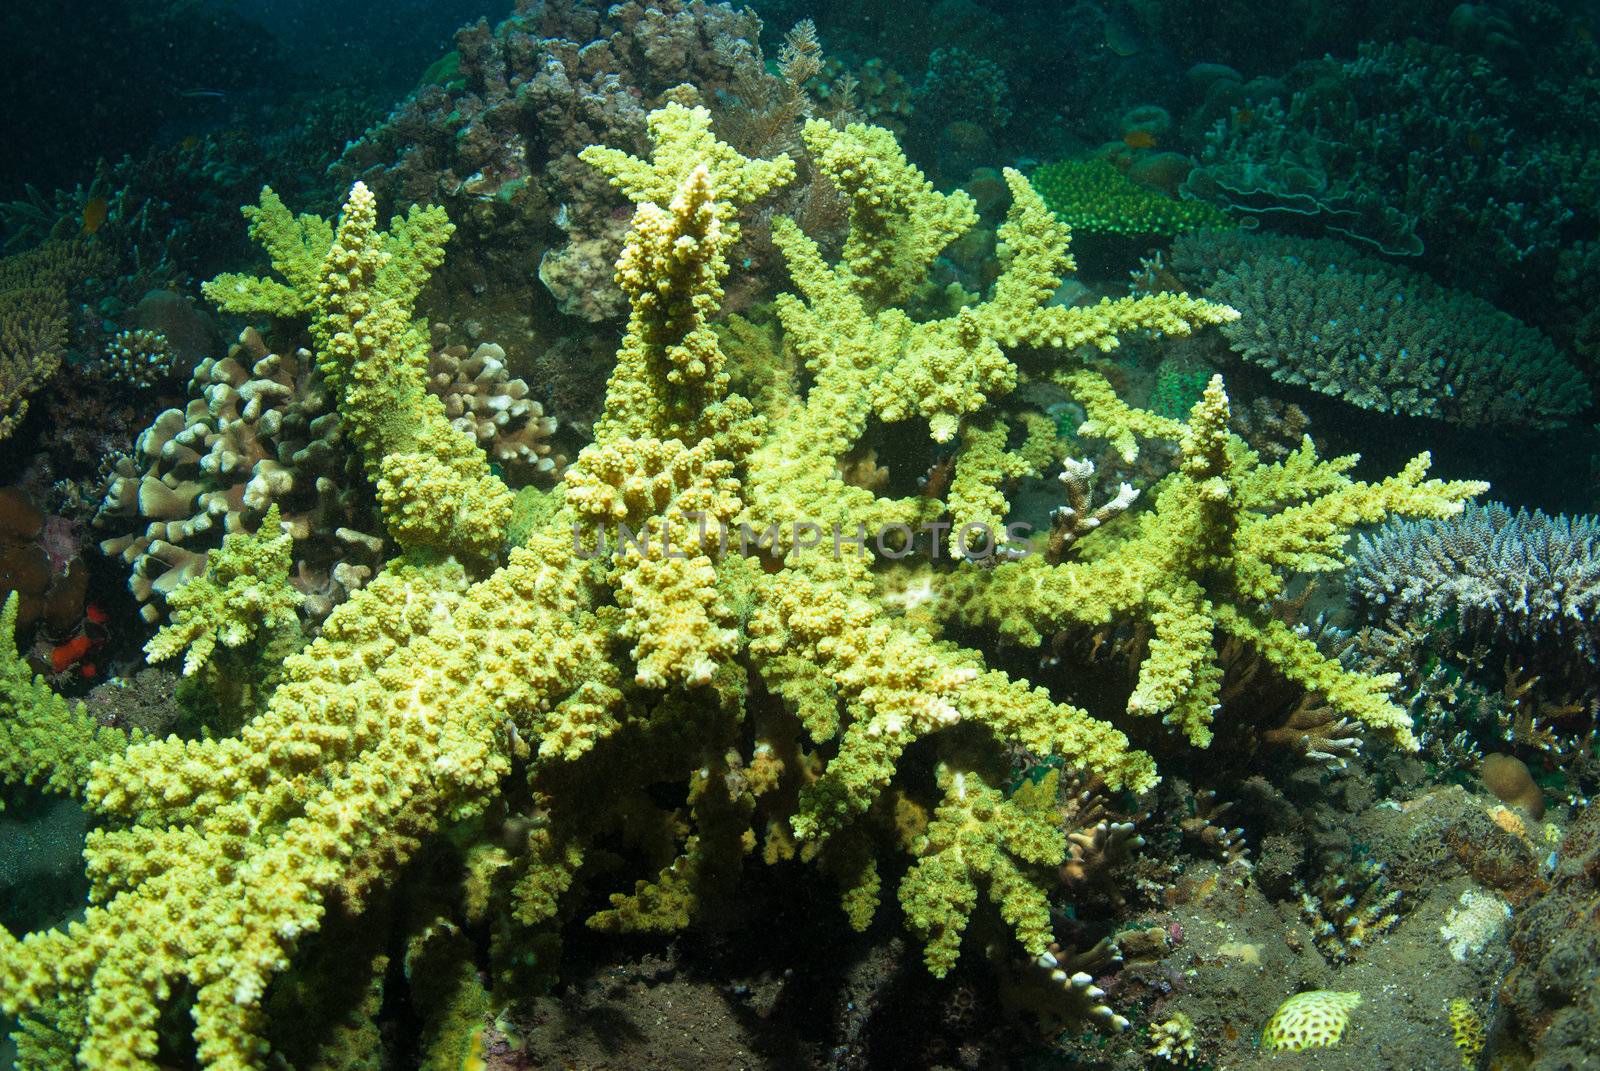 Acropora yongei coral, Bali by edan